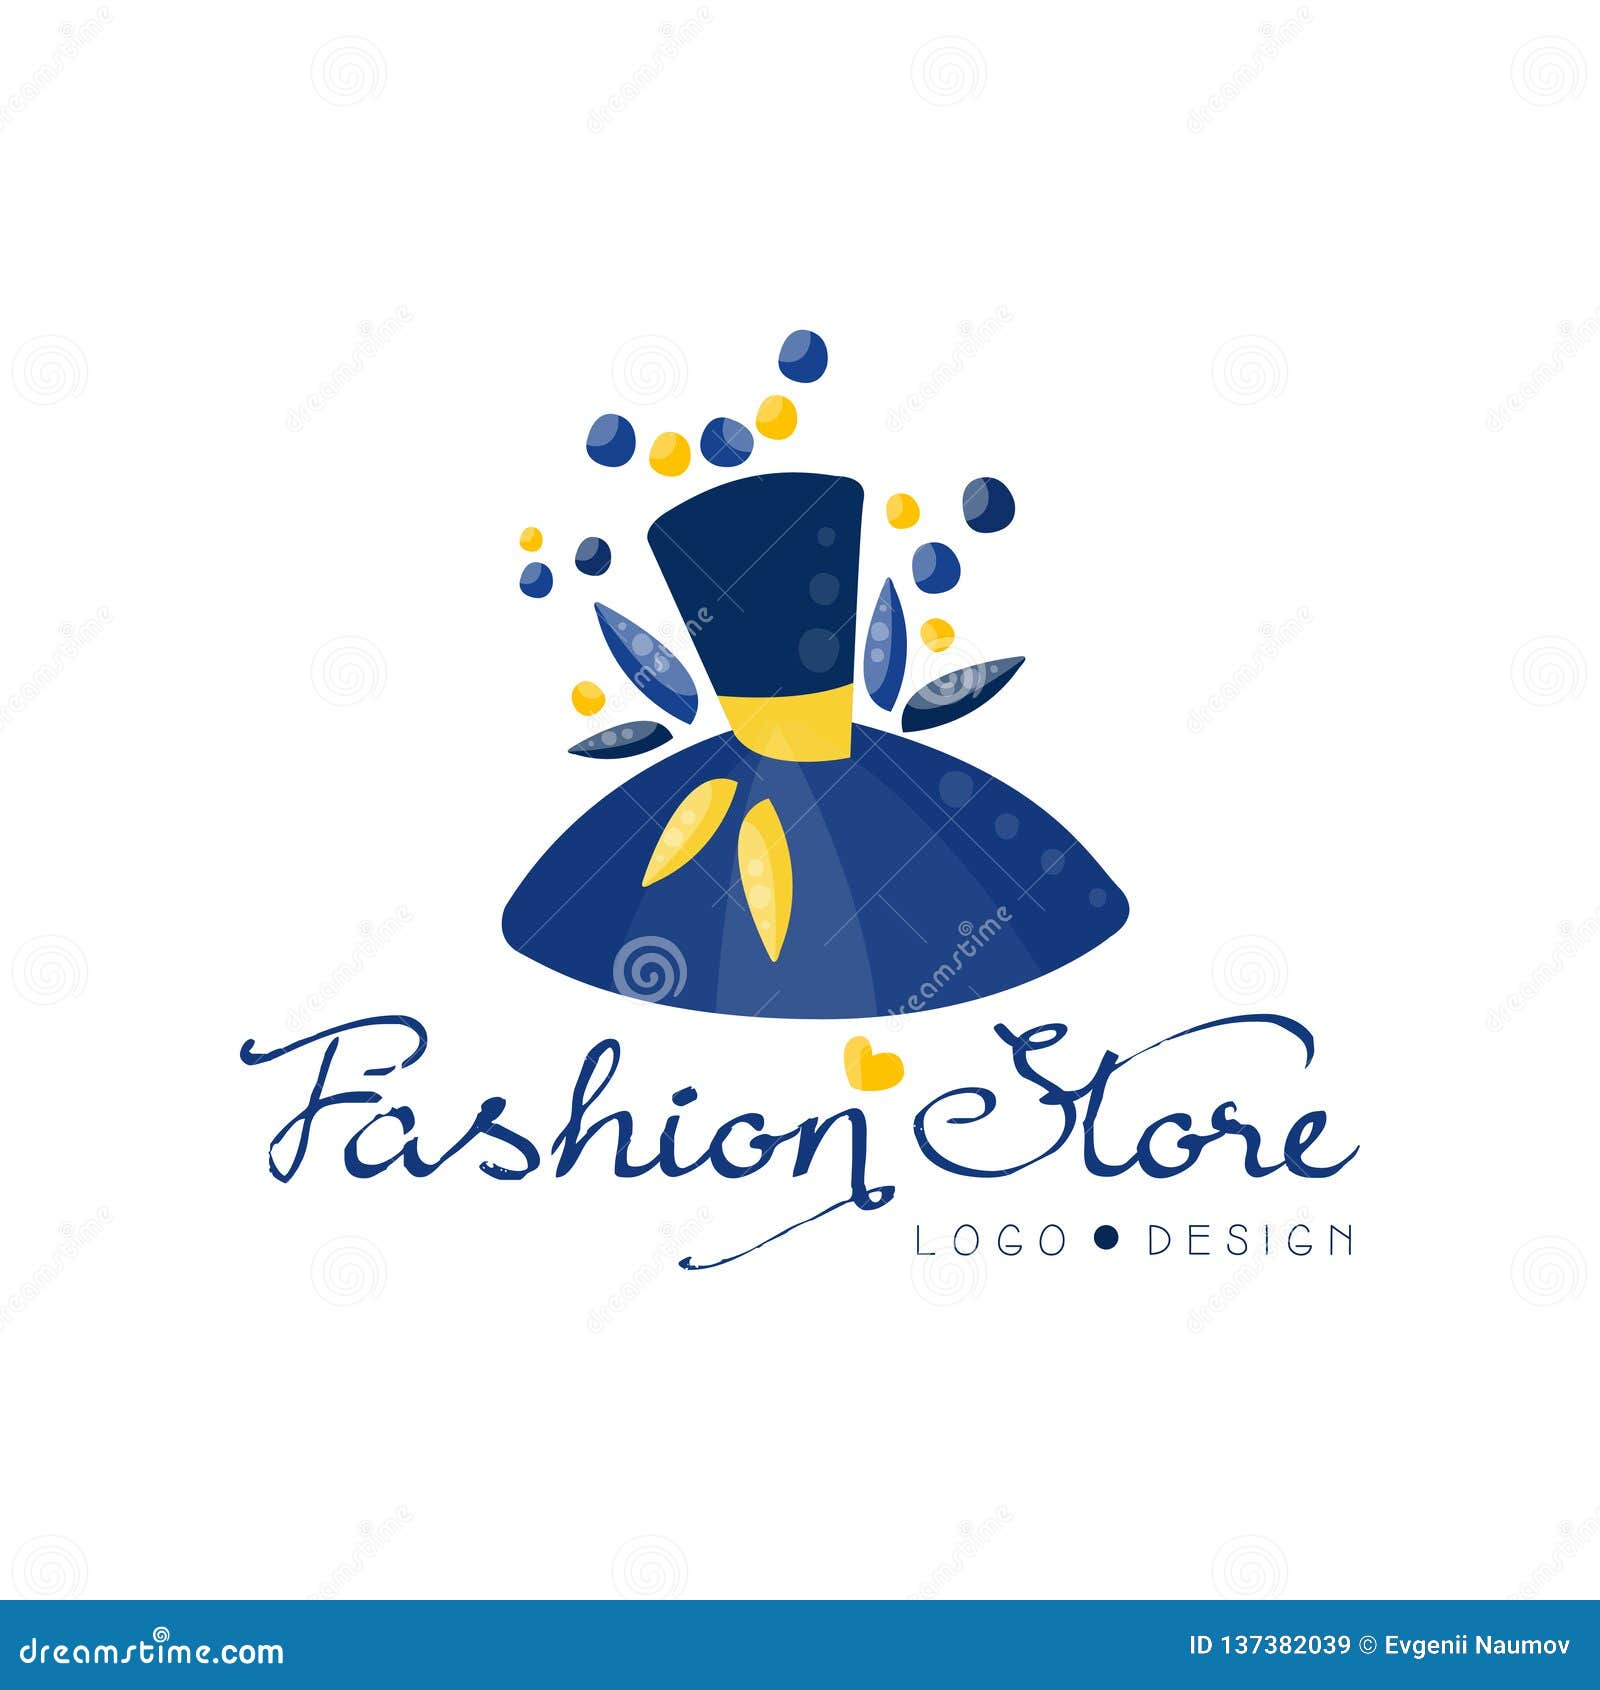 Fashion Store Logo Design Template, Clothes Shop, Beauty Salon or Boutique  Label Vector Illustration Stock Vector - Illustration of company, price:  137382039